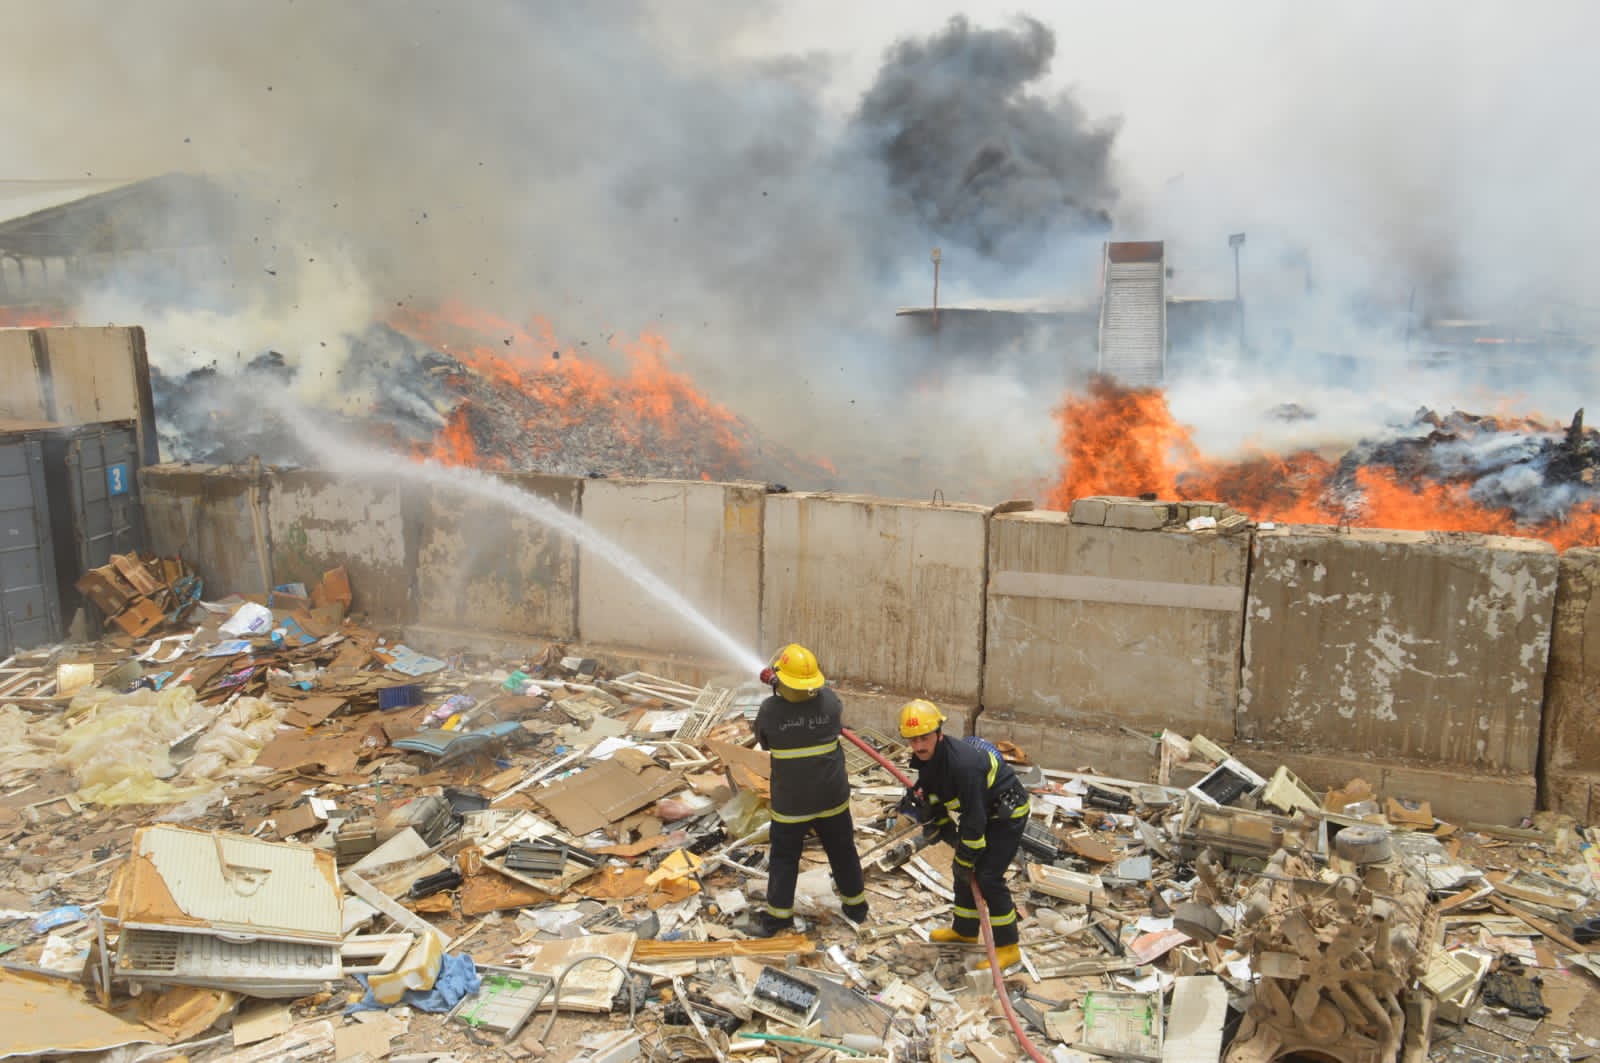  بغداد.. الدفاع المدني يخمد حريقاً داخل معمل ويمنع امتداده لمحطة وقود 